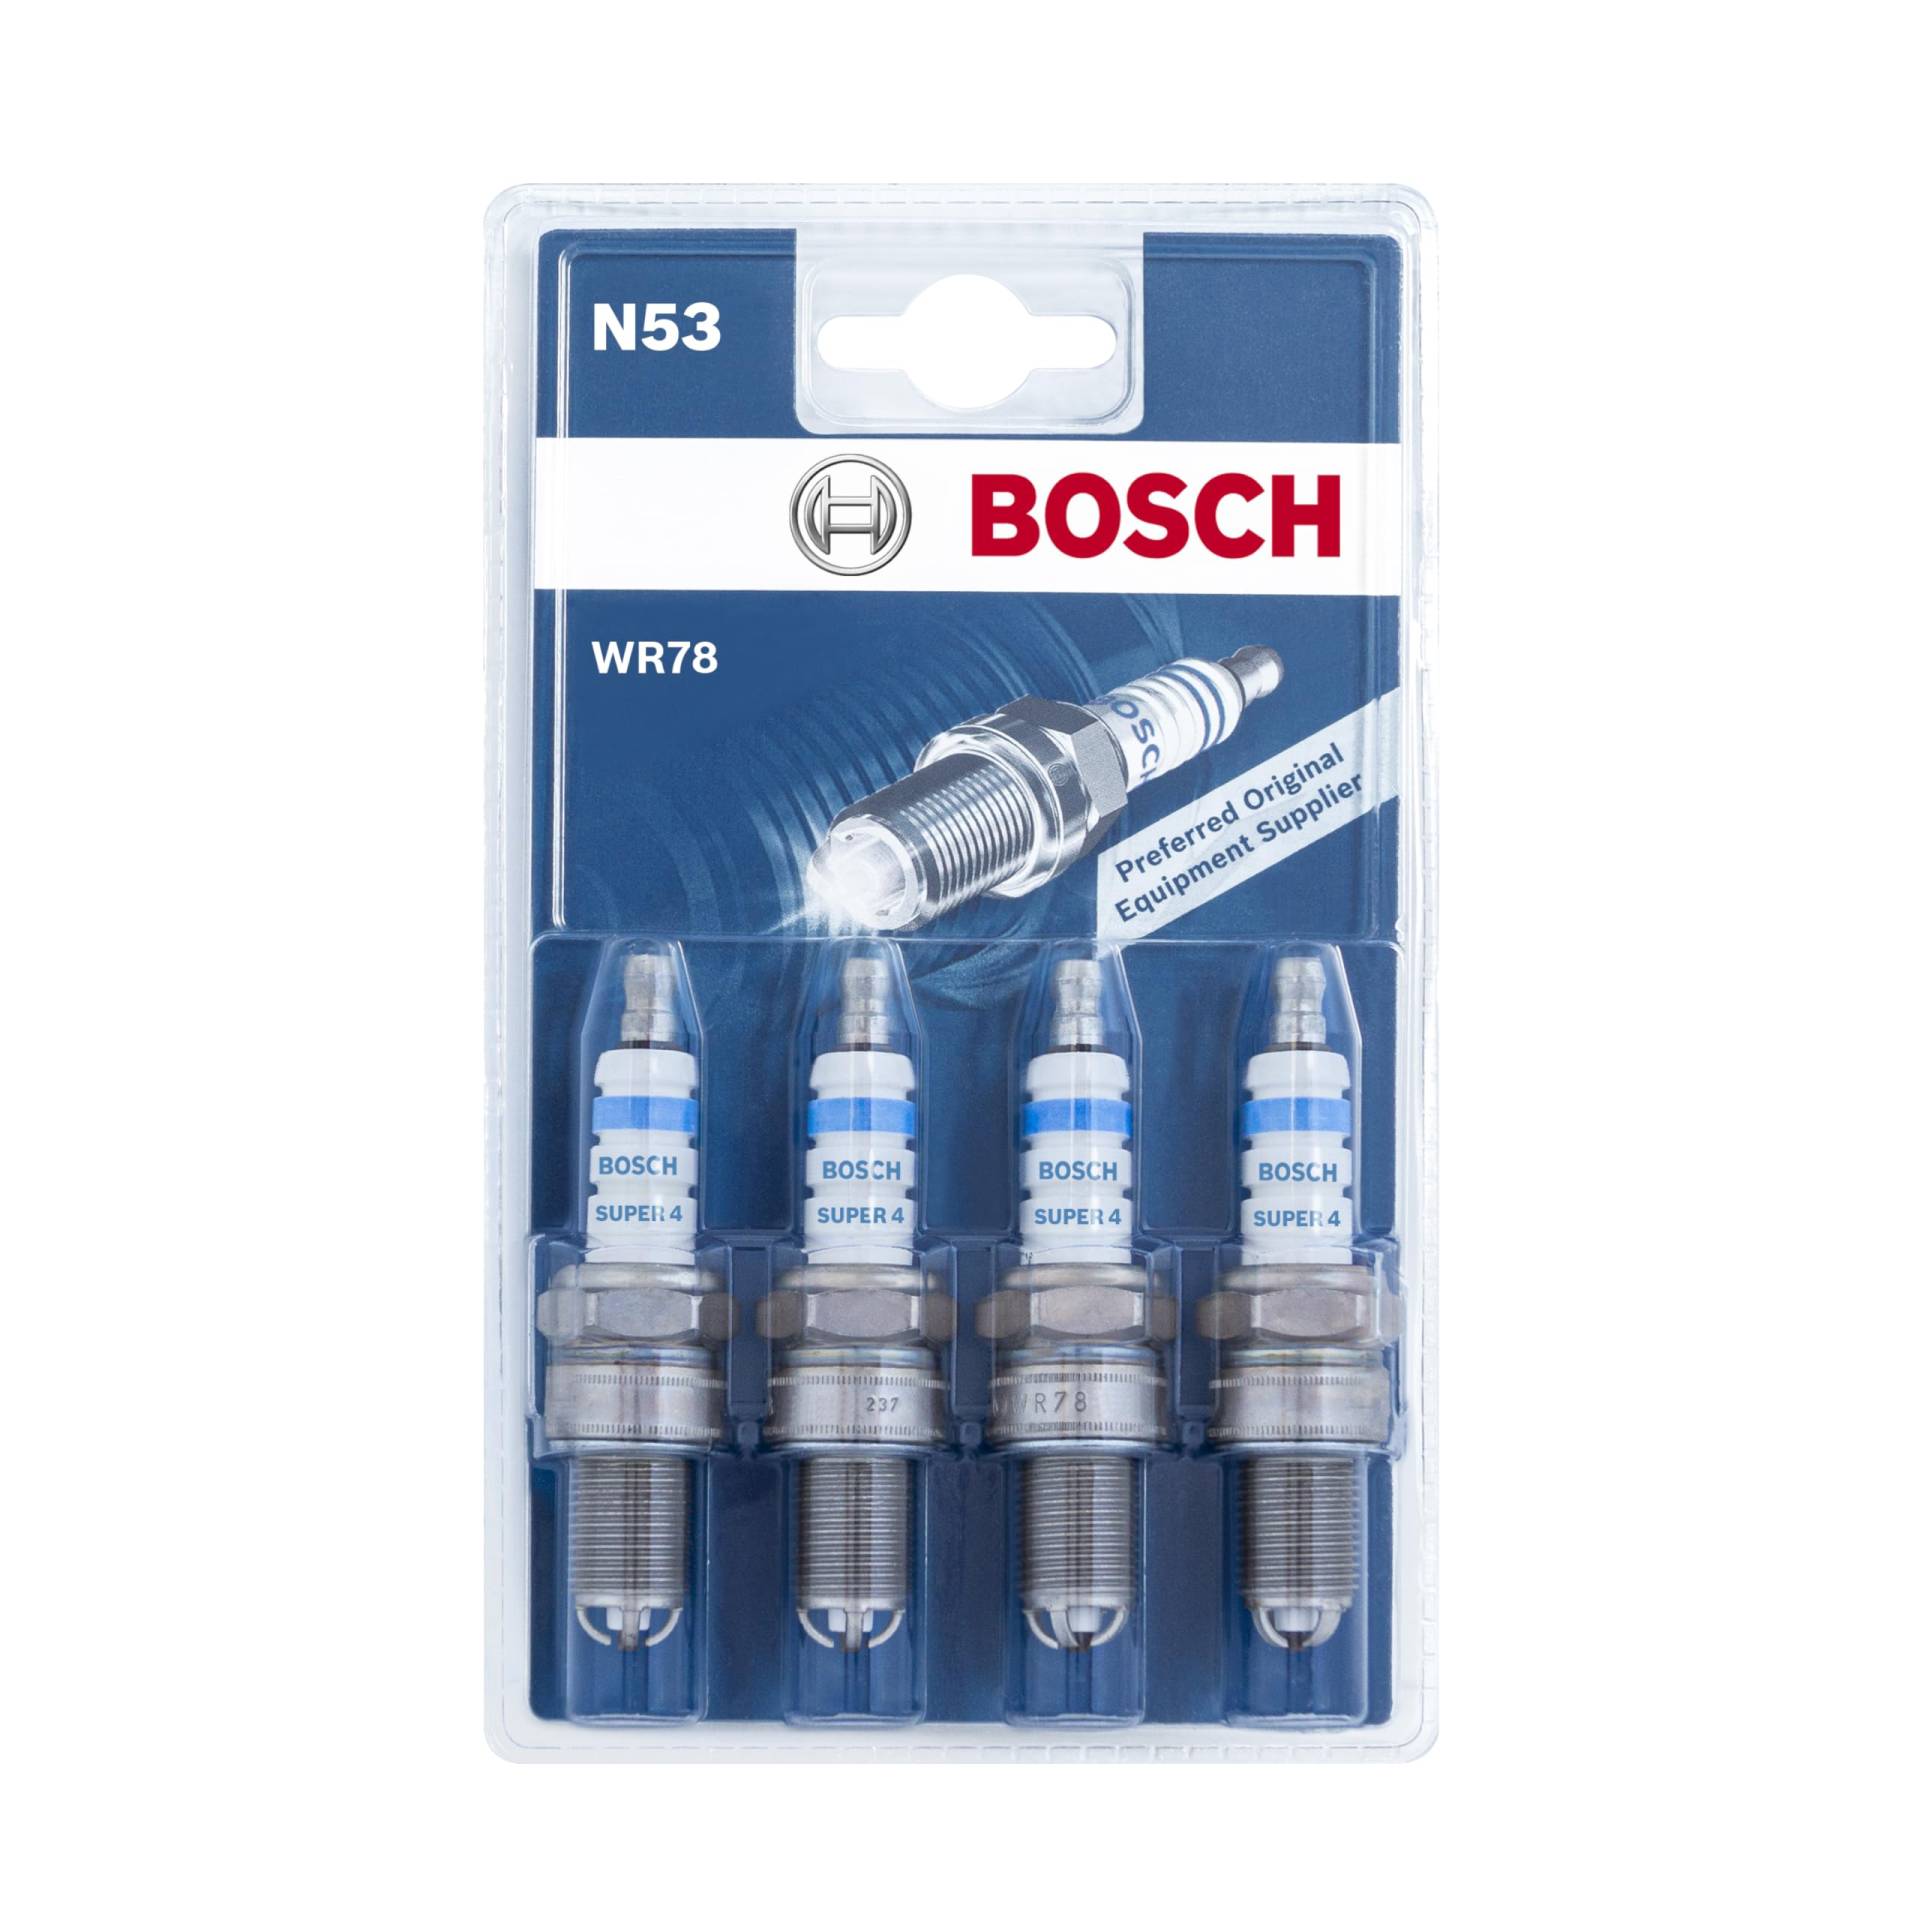 Bosch WR78 (N53) - Zündkerzen Super 4 - 4er Set von Bosch Automotive